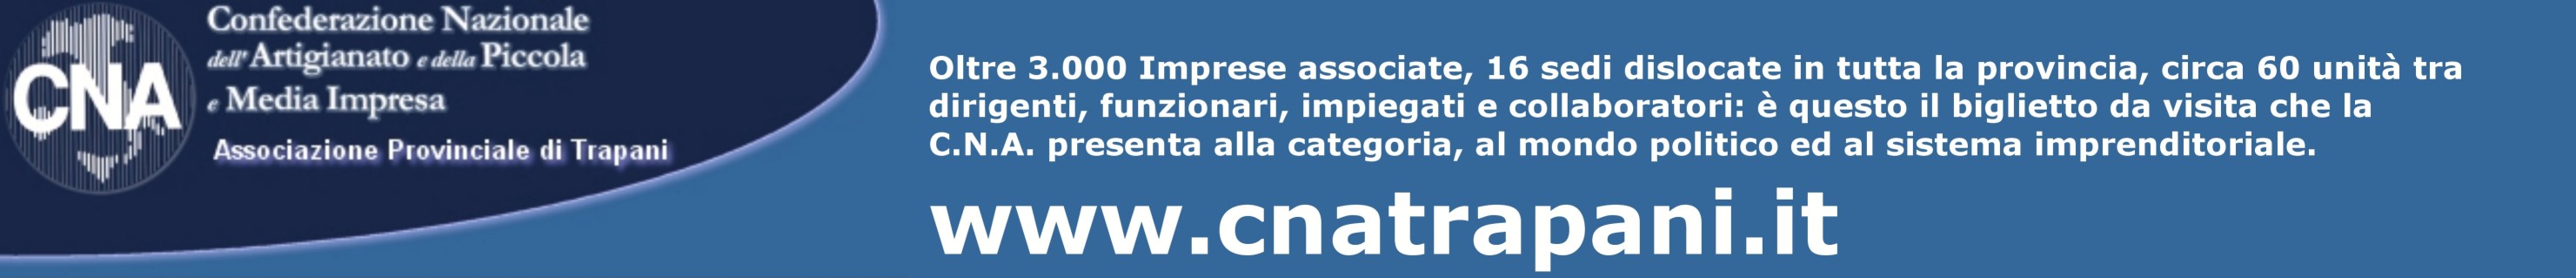 Il sito della CNA Associazione Provinciale di Trapani a cura di Lorenzo Gigante